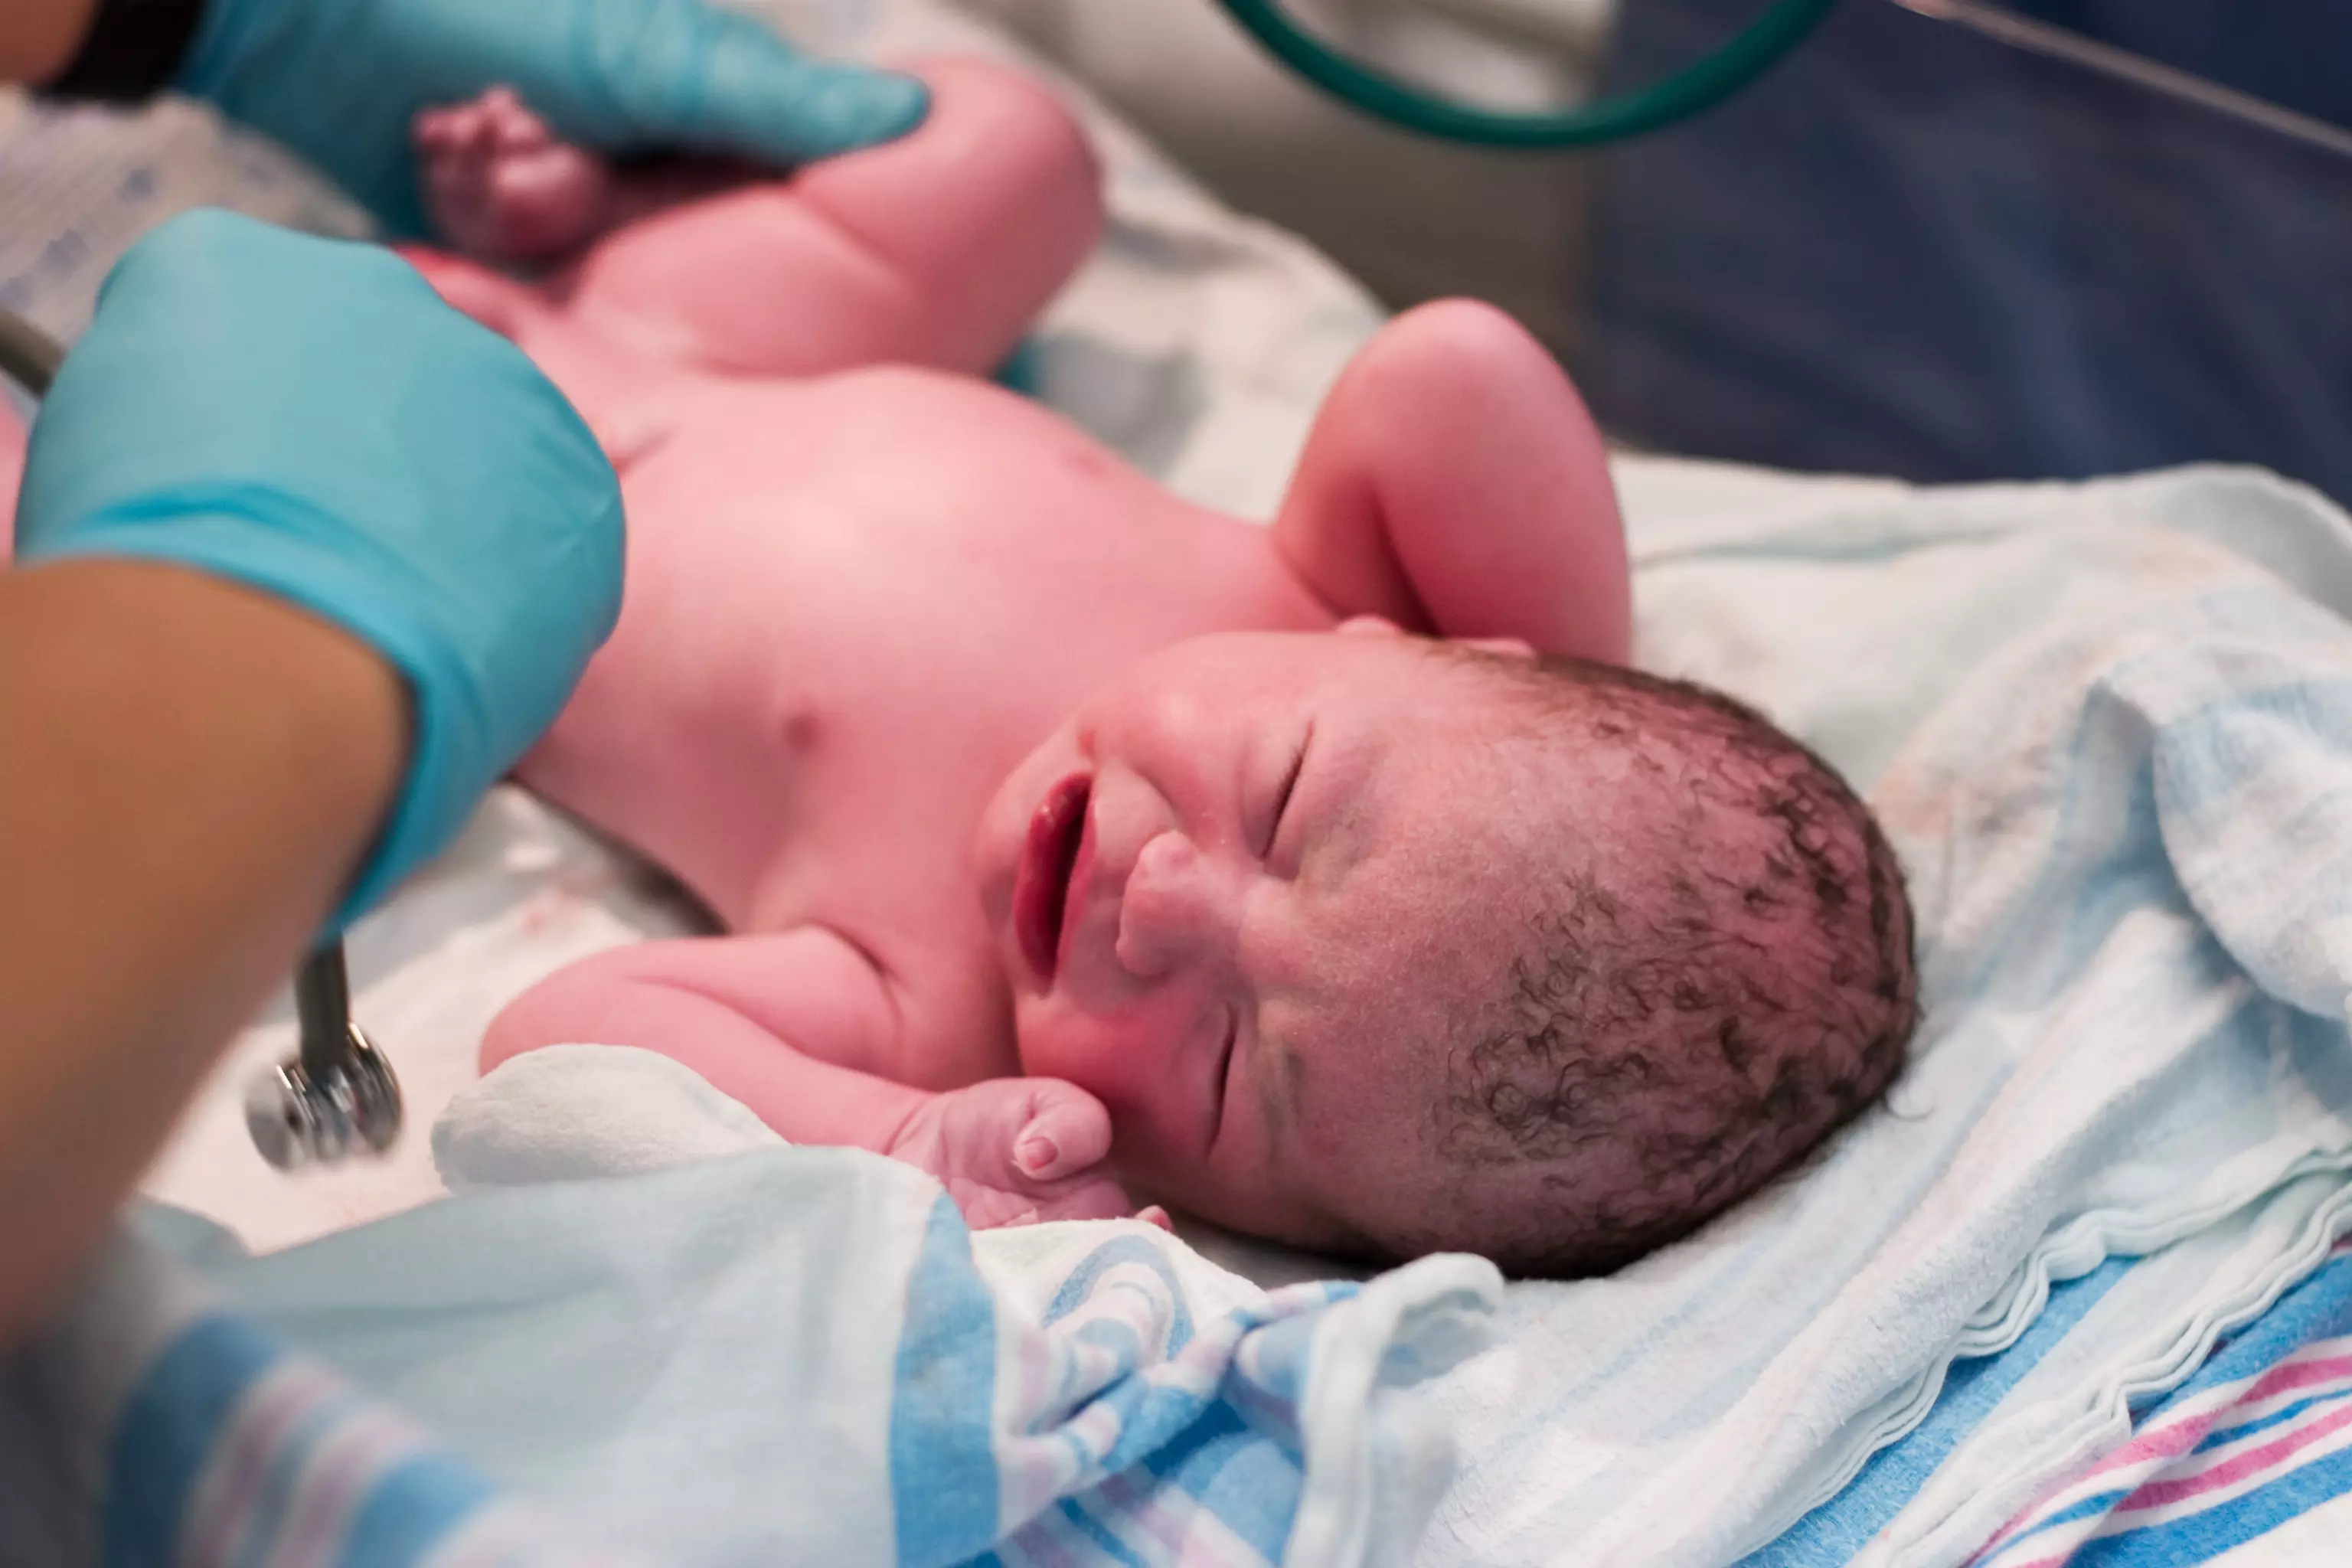 לקשר הנוצר בין היולדת למיילדת יש השפעה מכרעת על תהליך הלידה